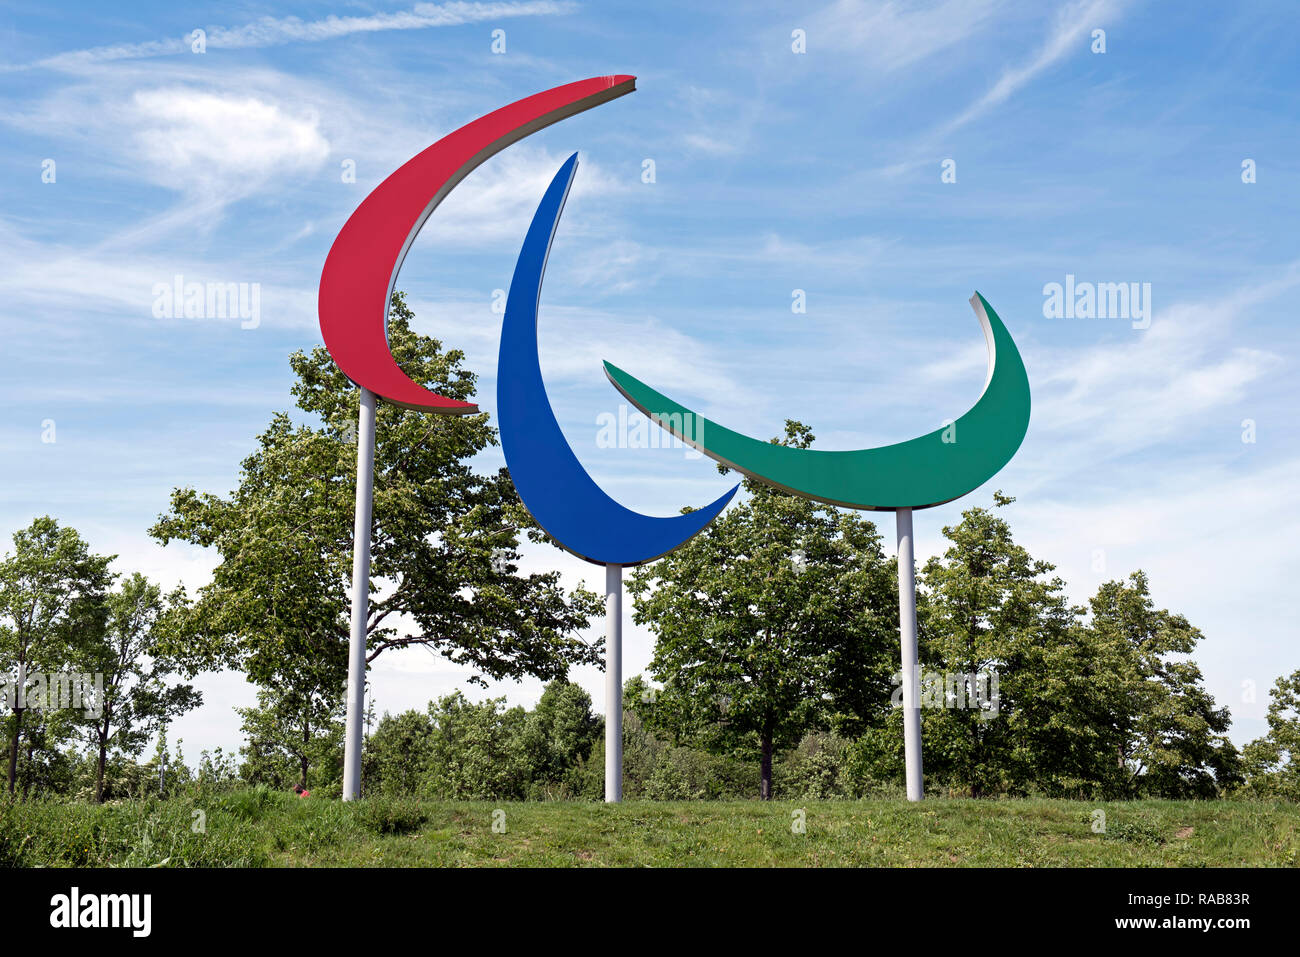 Paralympischen Spiele Symbol Queen Elizabeth Olympic Park, London England Großbritannien UK Stockfoto